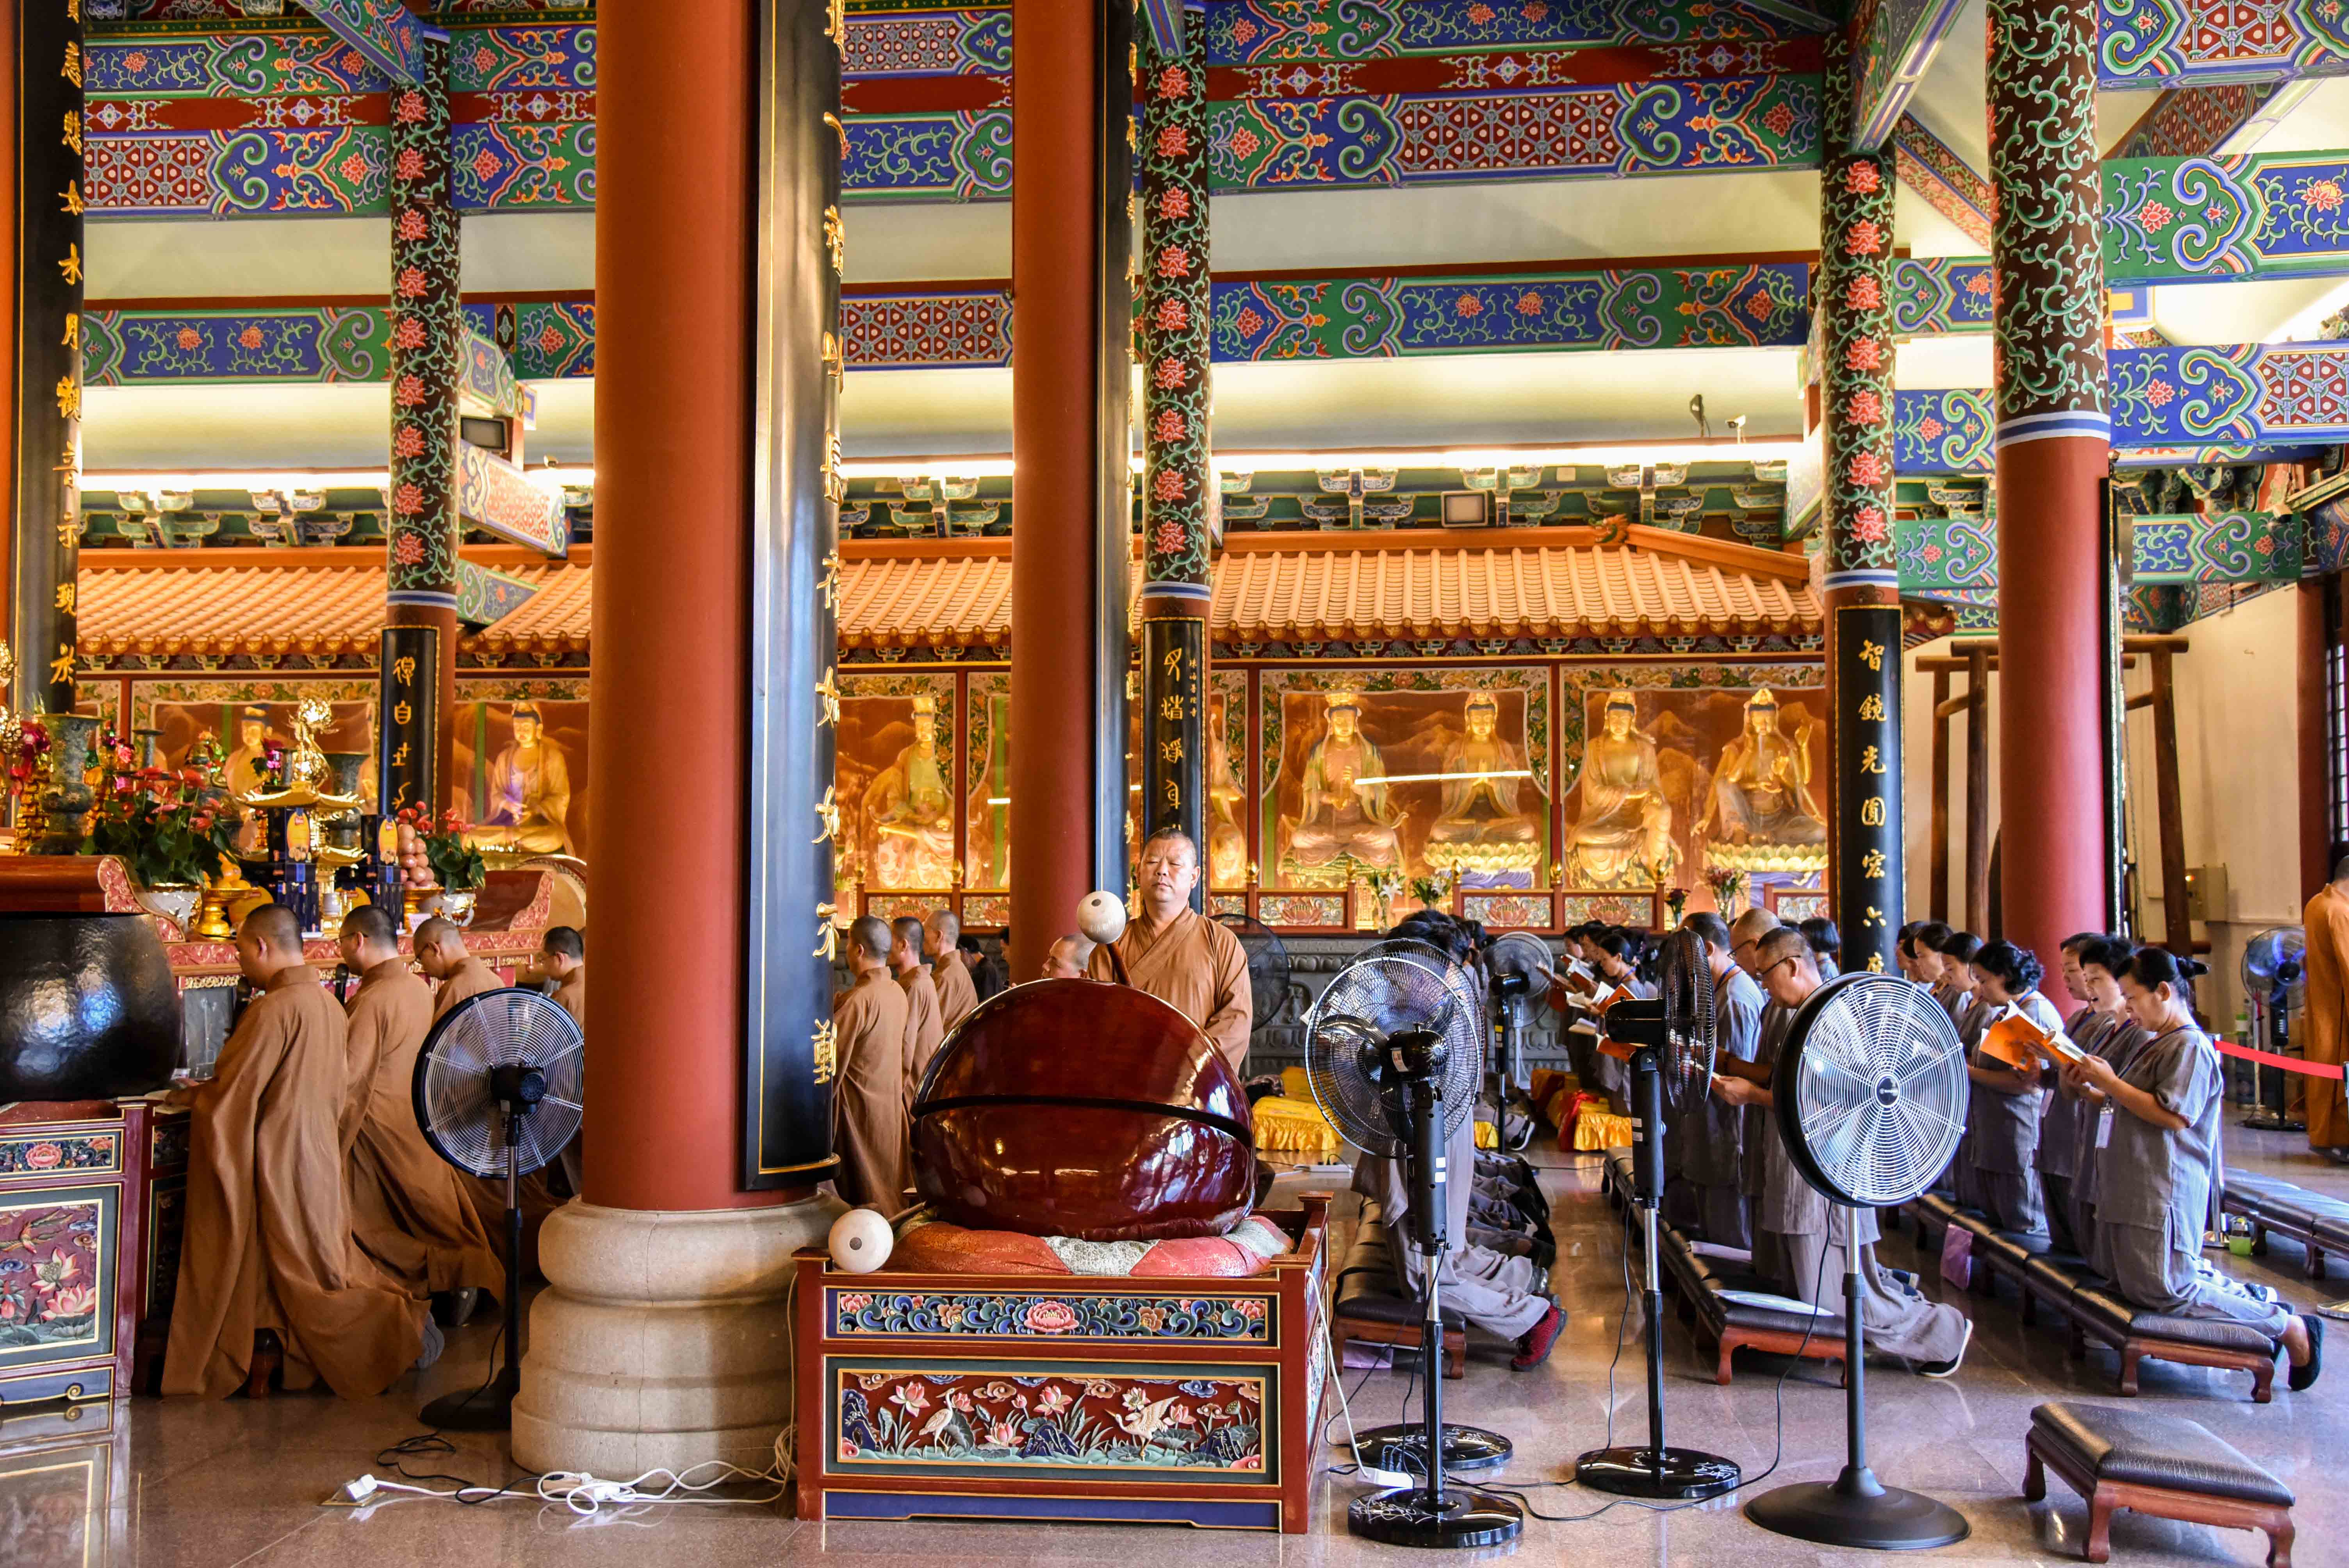 珠海普陀寺2019年短期出家班开班第二日学习佛教仪轨和禅堂规矩体验